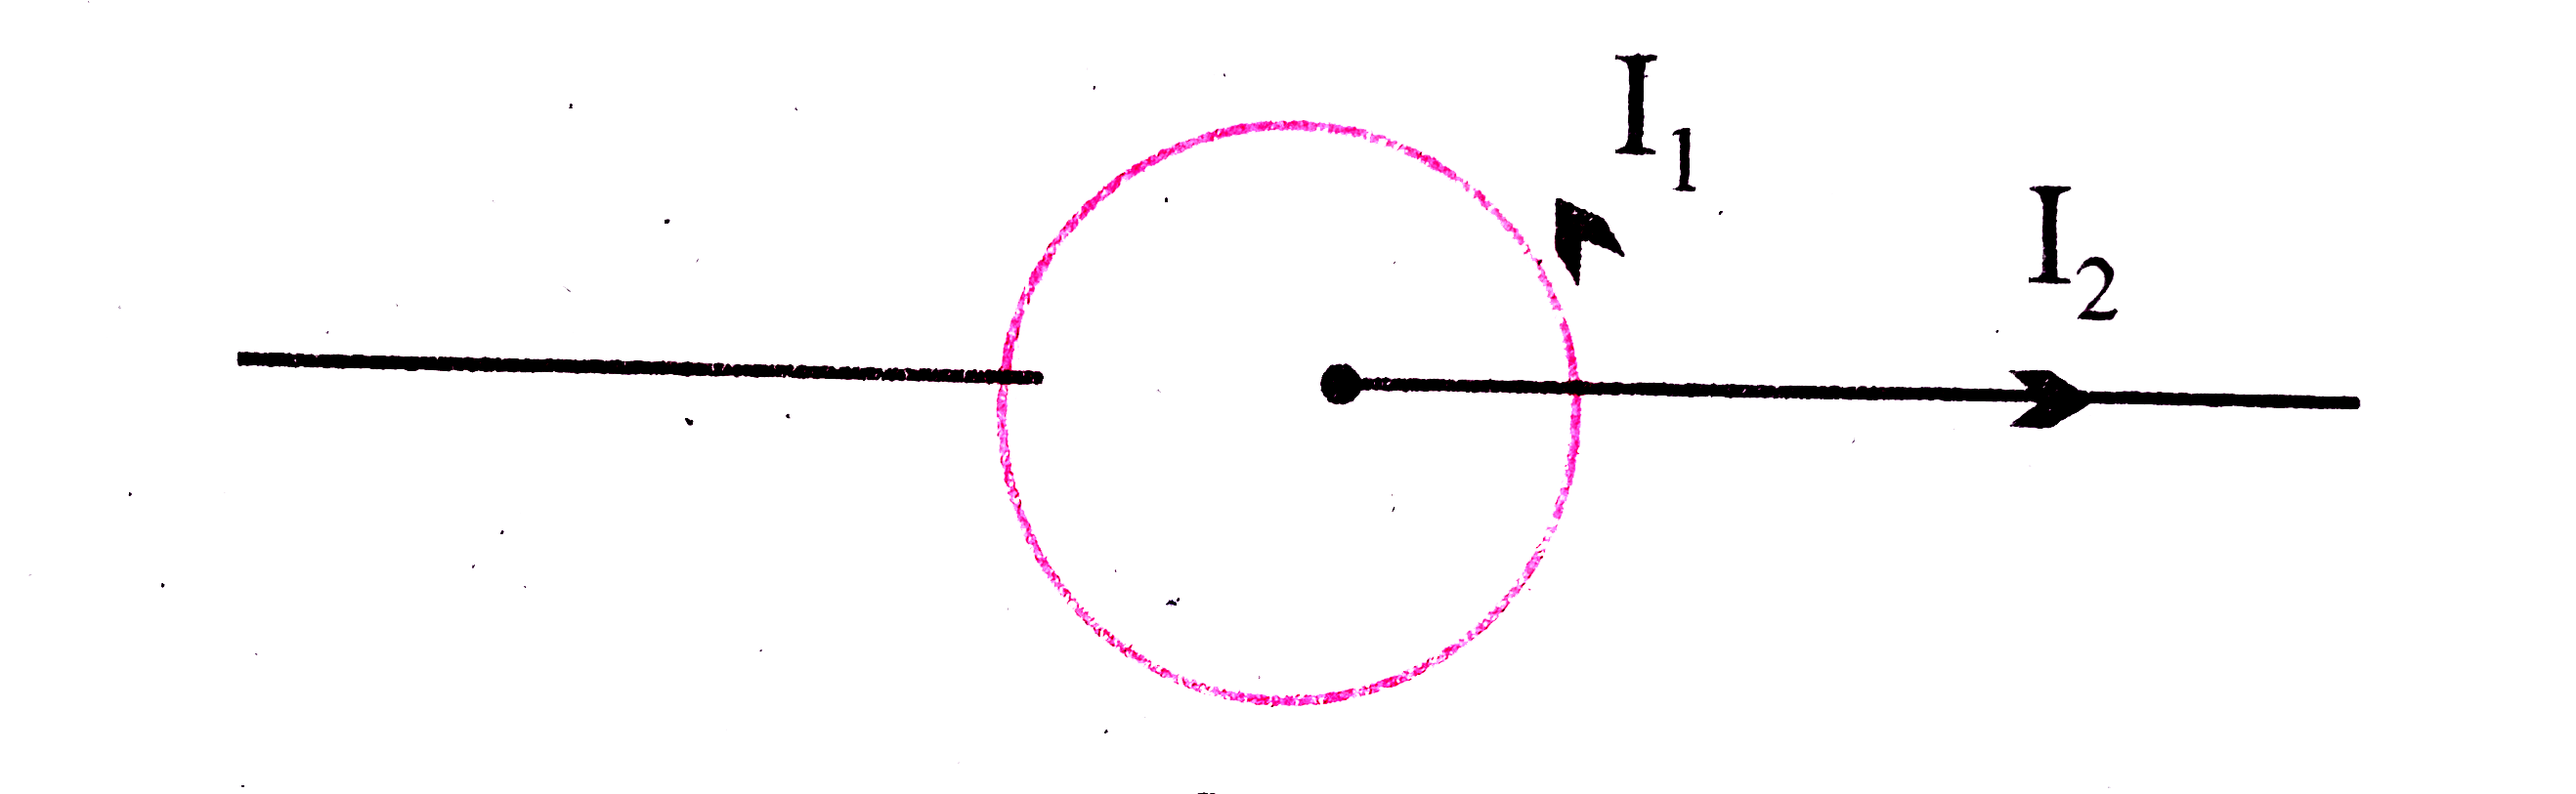 चित्र में एक वृत्तीय कुंडली में I(1) धारा प्रवाहित हो रही है तथा उसके अक्ष पर स्थित तार में I(2) धारा प्रवाहित हो रही है दोनों धाराओं के मध्य पारस्परिक क्रिया के कारण चुंबकीय बल कितना होगा ?